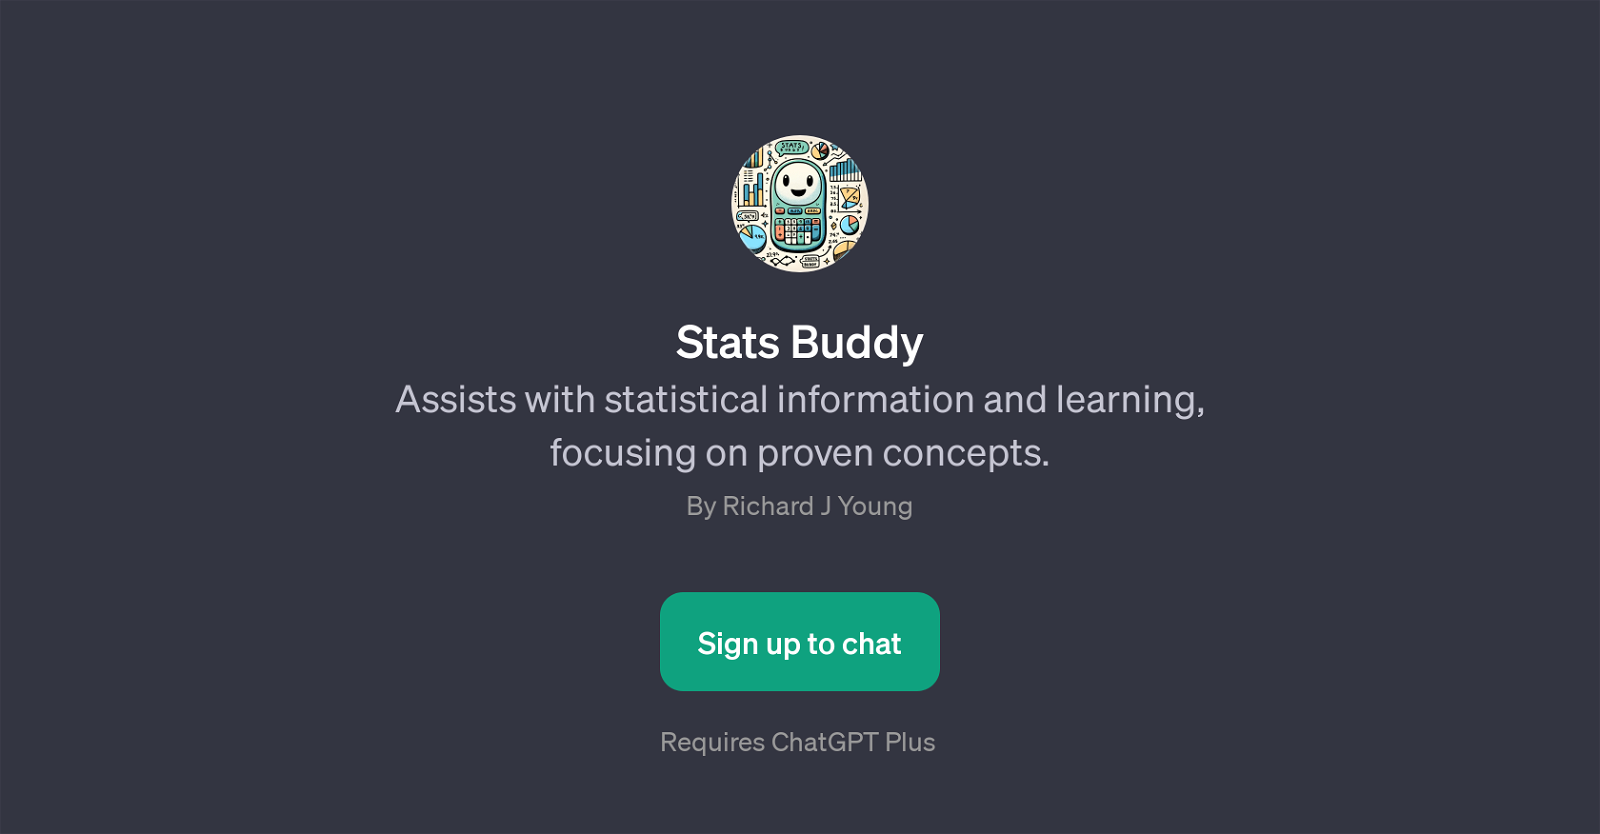 Stats Buddy website